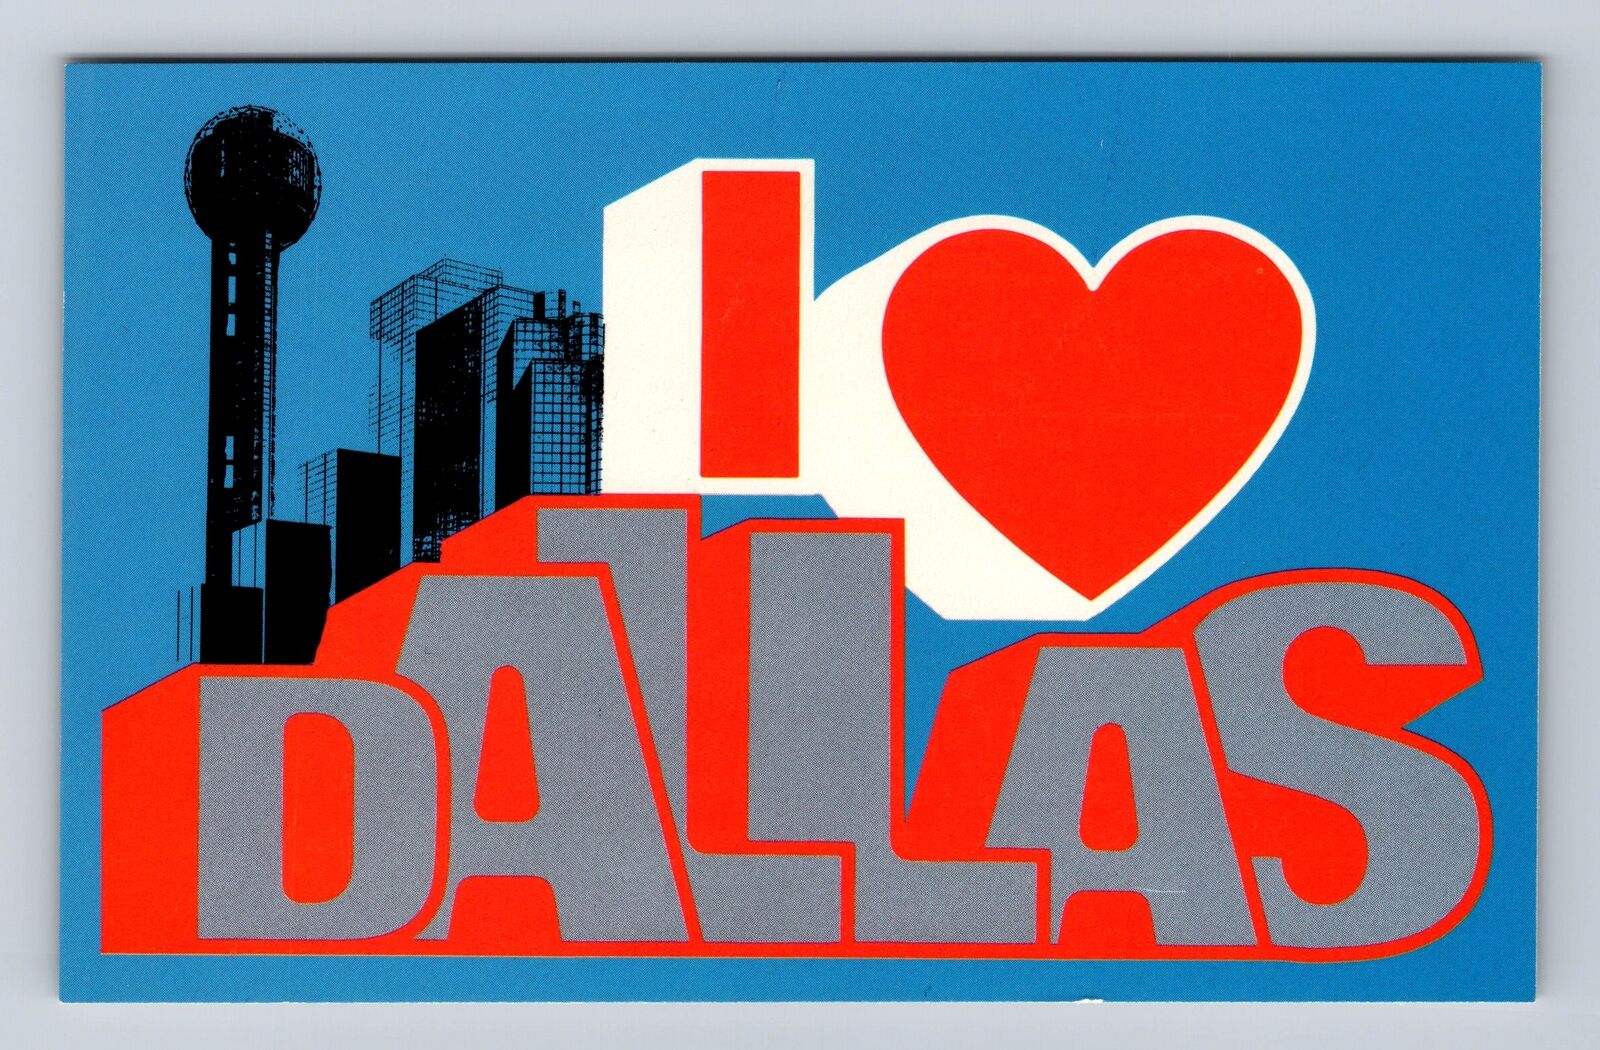 Dallas TX-Texas, LARGE LETTER GREETING, Antique Vintage Souvenir Postcard